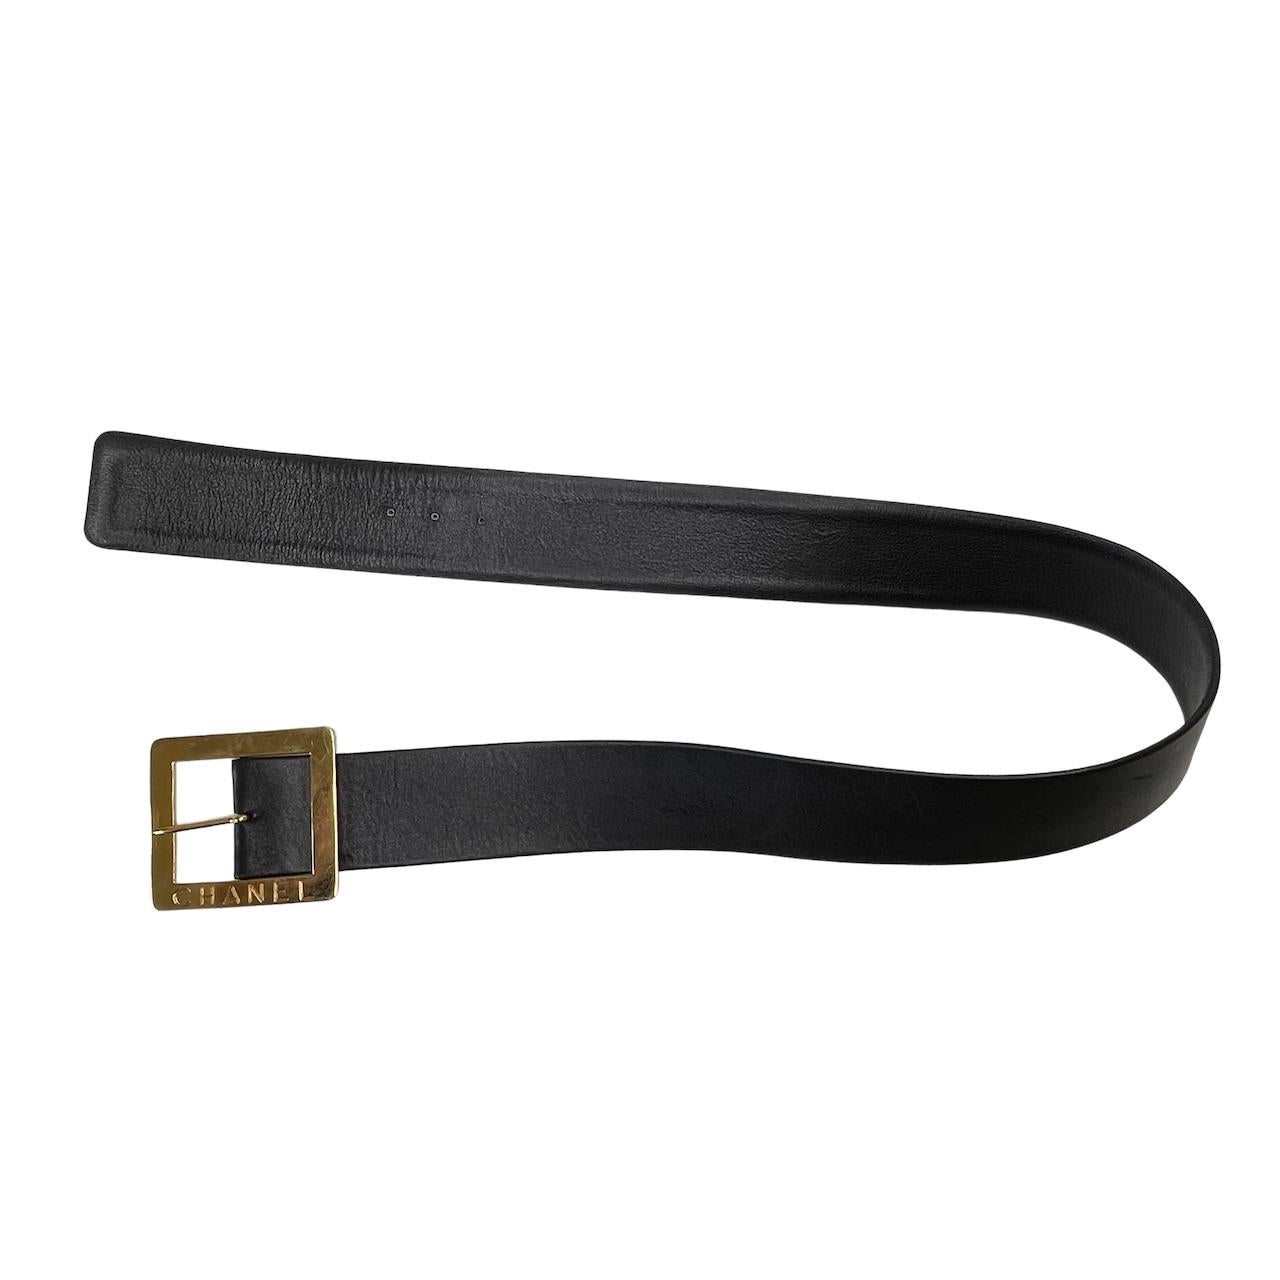 Cette ceinture vintage est issue de la collection 1990 et se compose de cuir noir, de pièces en métal doré et d'une boucle de fermeture.

COULEUR : Noir
MATÉRIEL : Cuir
MESURES : L 35